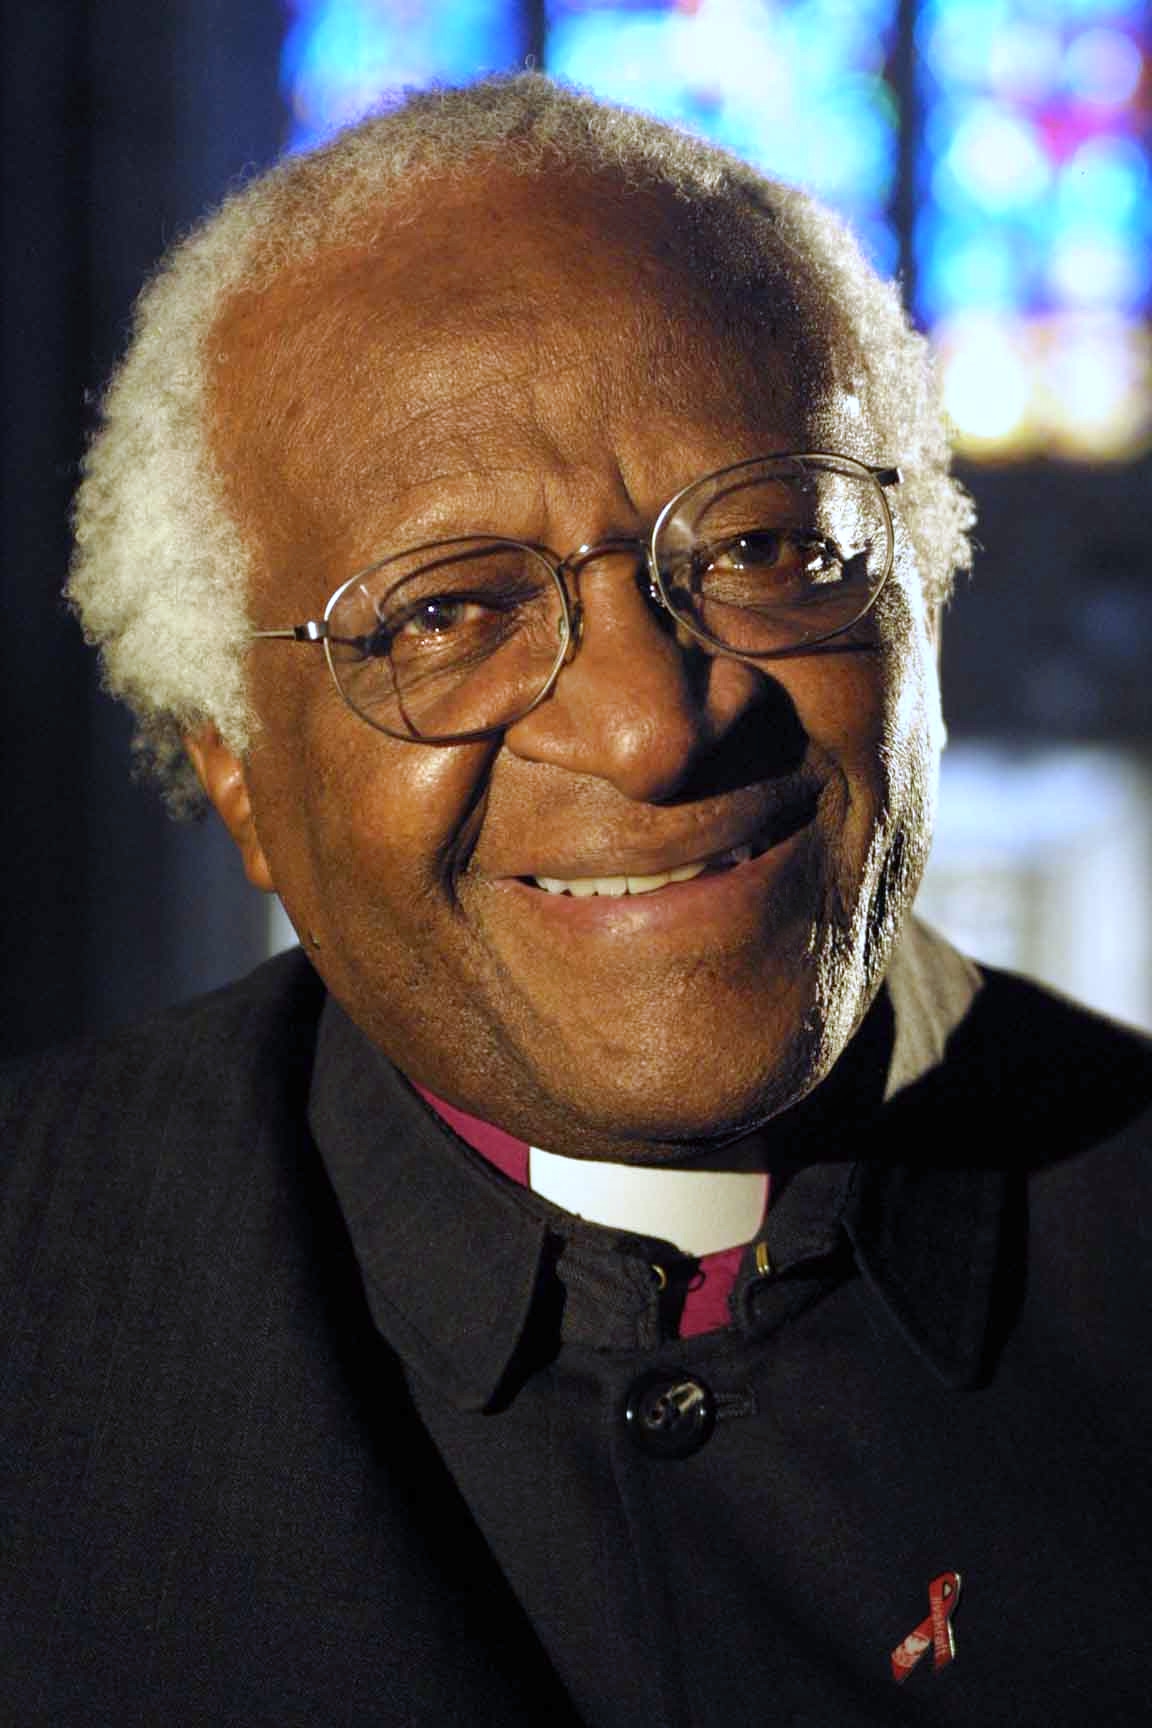 auteur Desmond Tutu de la citation Nous avons permis aux intérêts du capital de l'emporter sur les intérêts des êtres humains et de notre terre.